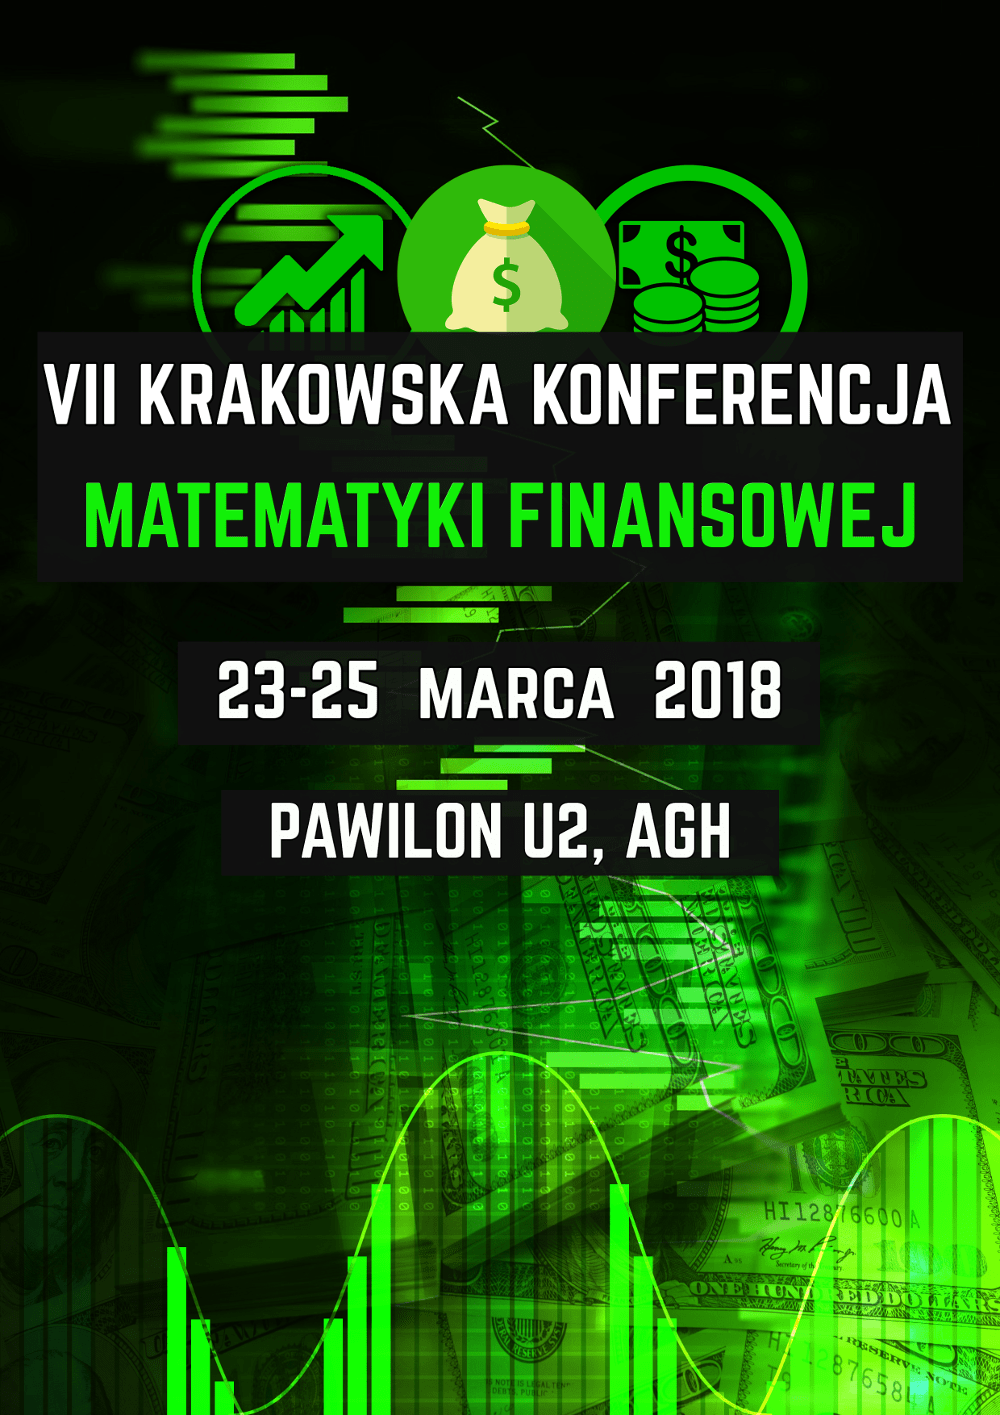 Konferencja odbędzie się w dniach 23-25 marca 2018 roku.